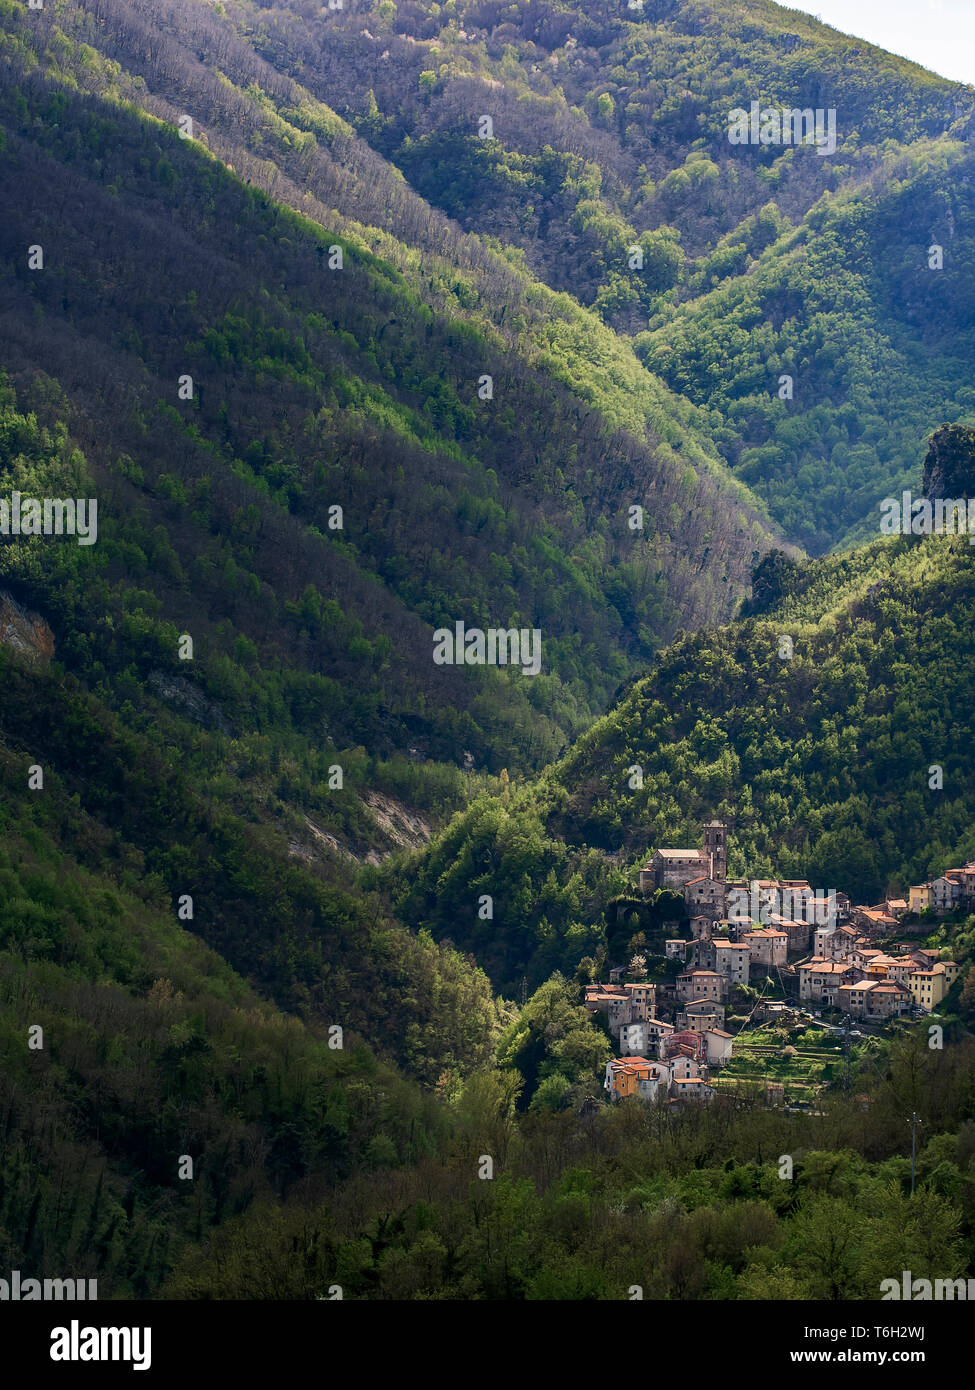 Equi Terme, magnifique cité médiévale spa village nichant dans les montagnes des Alpes Apuanes, Toscane, Italie. Célèbre pour sa teneur en soufre Le soufre, l'eau de source. Banque D'Images